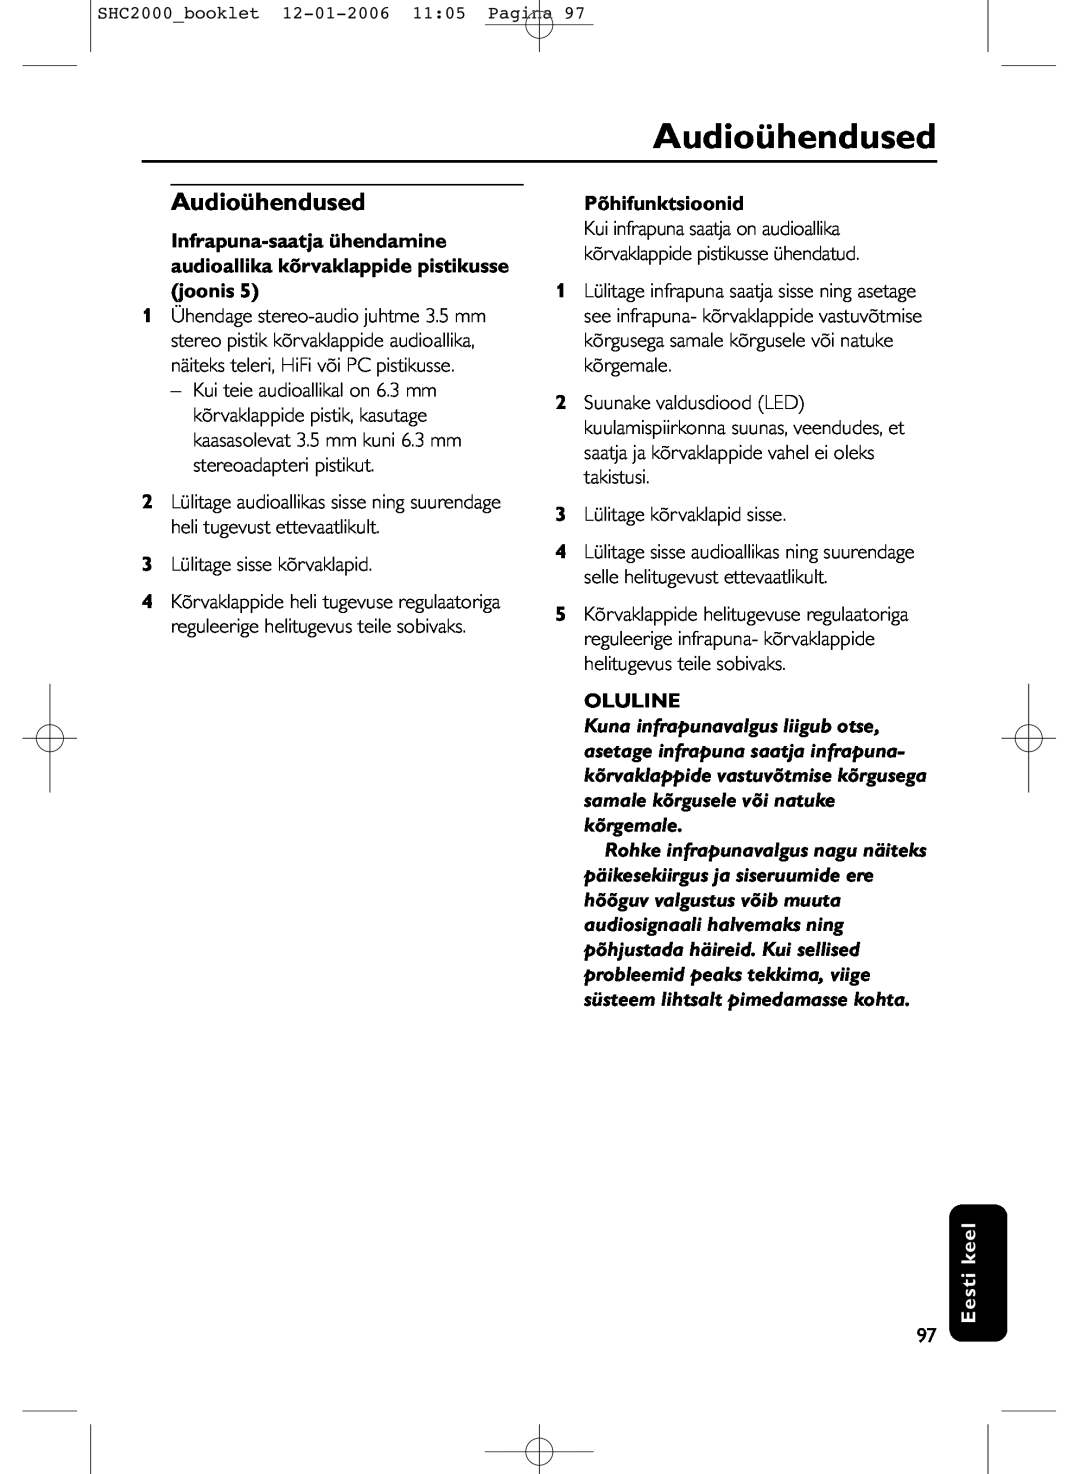 Philips SHC2000 manual Audioühendused, Põhifunktsioonid, Oluline, Eesti keel 